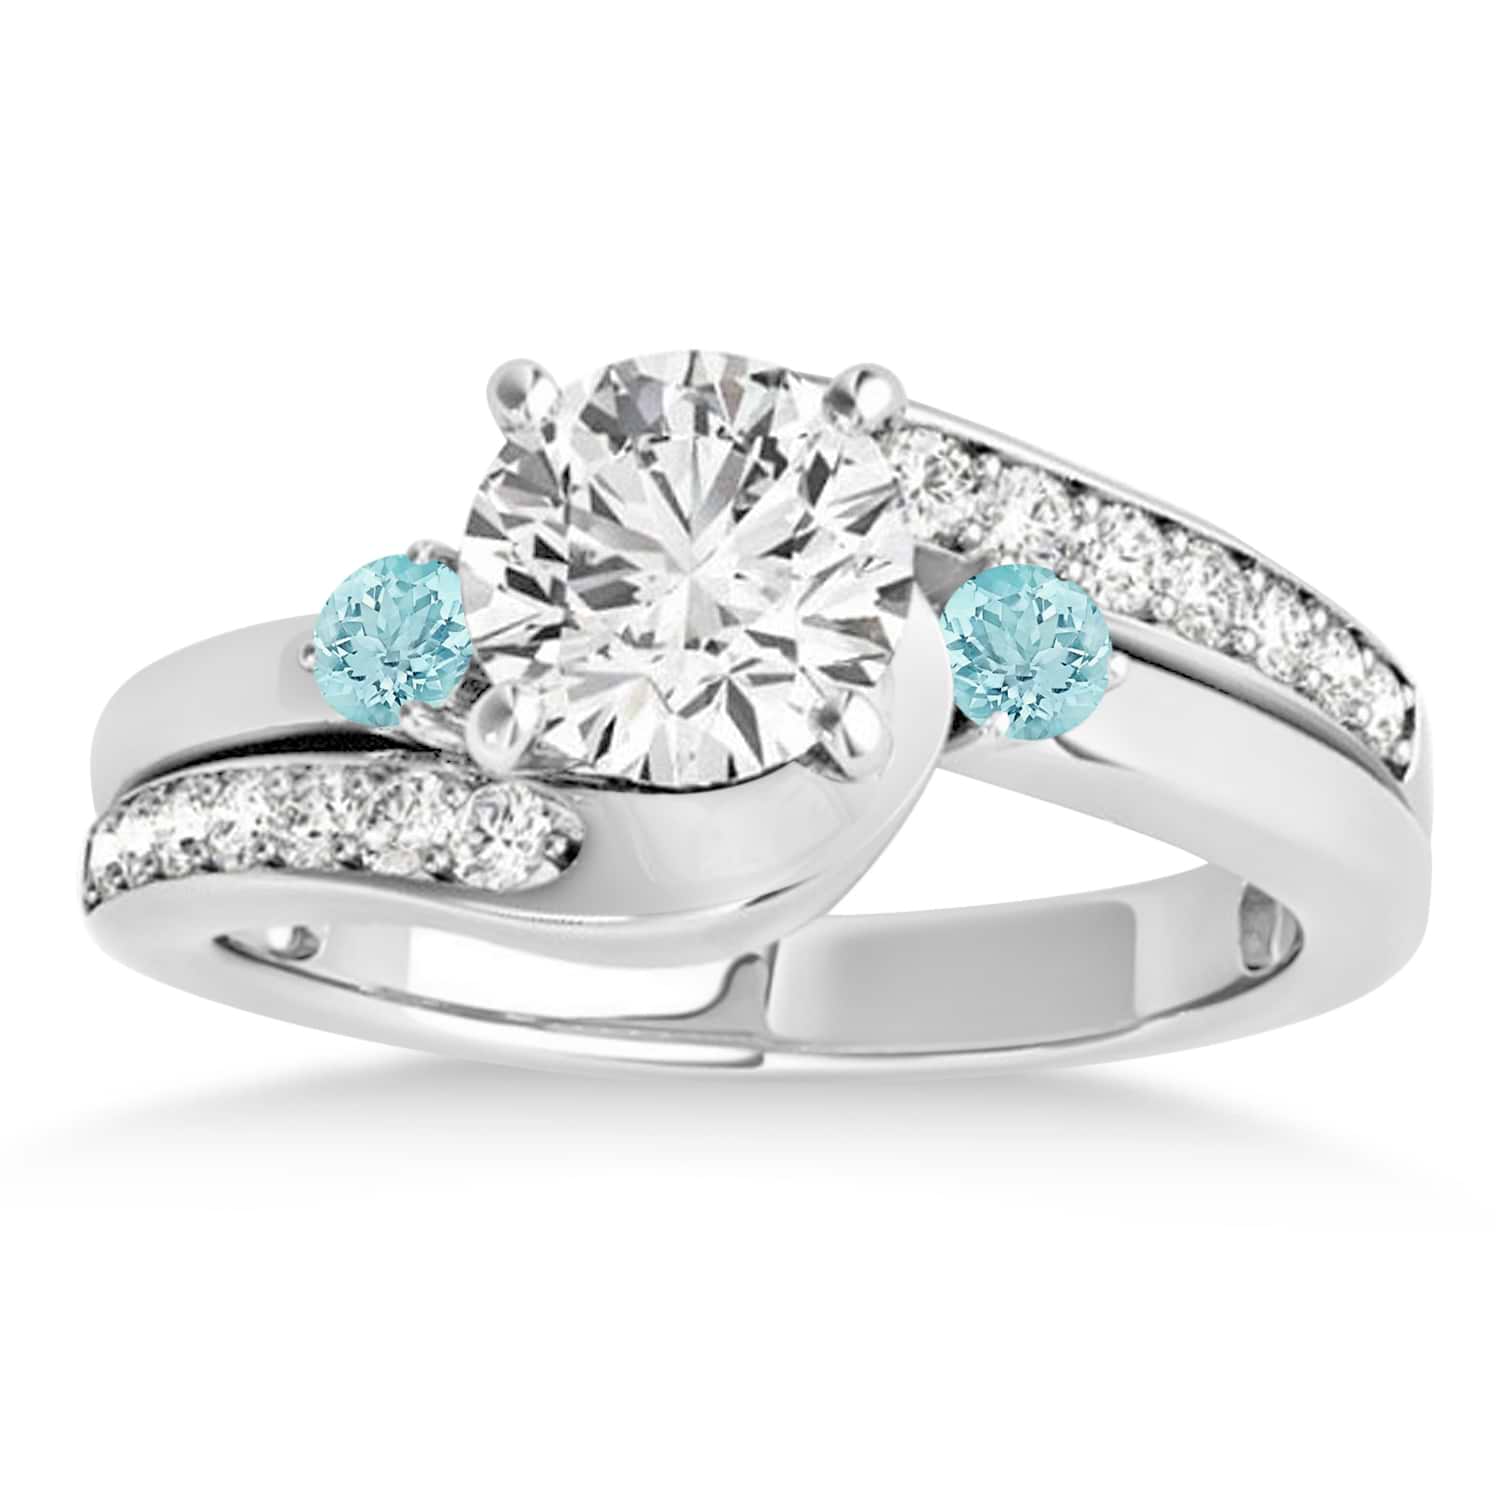 Swirl Design Aquamarine & Diamond Engagement Ring Setting 14k White Gold 0.38ct